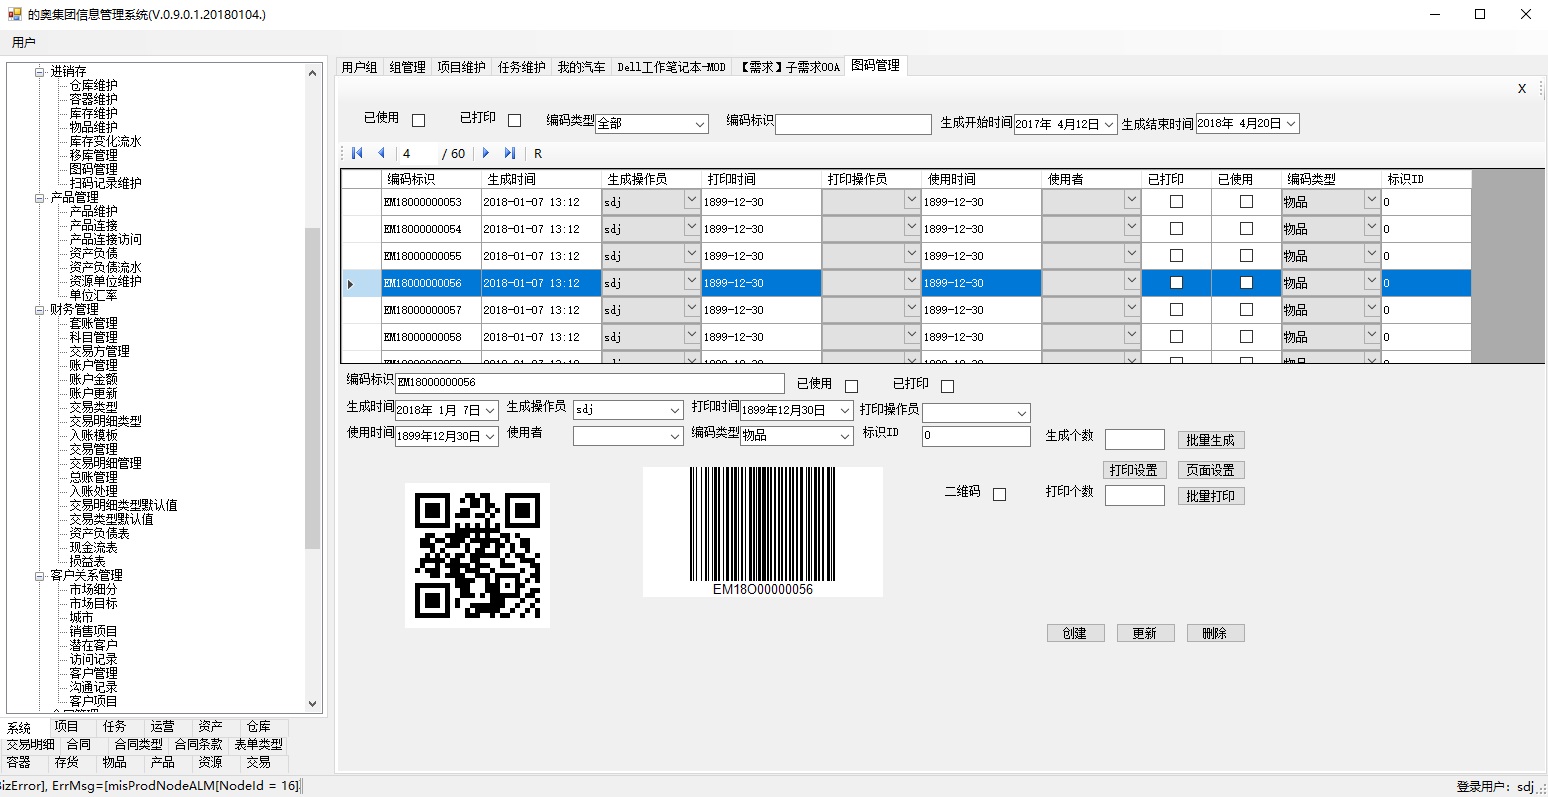 上海邑泊圖碼管理支持二維碼和條形碼，可以對管理軟件系統里的多種數據進行標識，比如商品、倉庫、容器、合同、項目、任務、產品等。